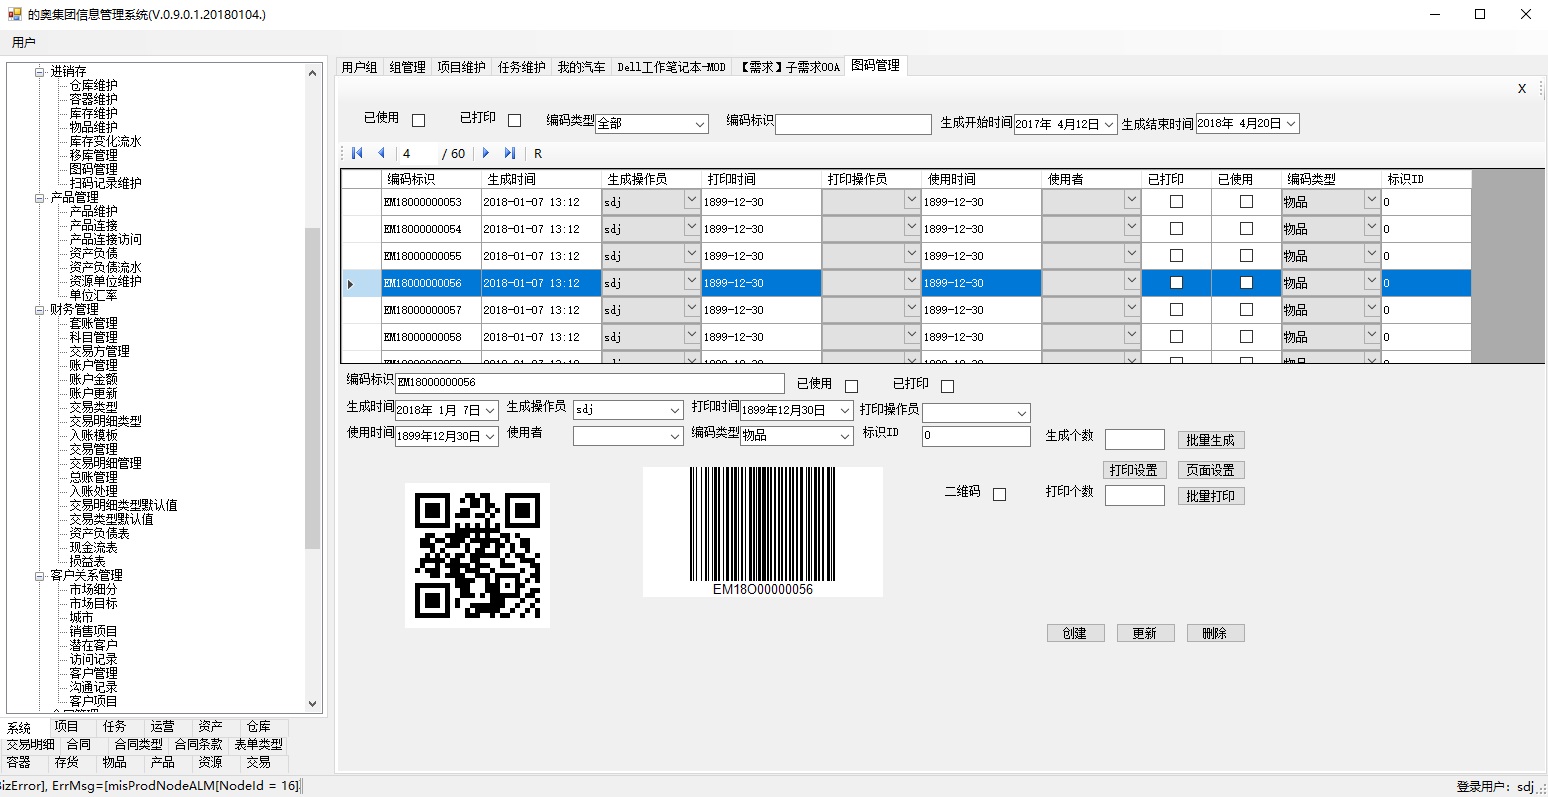 上海邑泊圖碼管理支持二維碼和條形碼，可以對管理軟件系統里的多種數據進行標識，比如商品、倉庫、容器、合同、項目、任務、產品等。